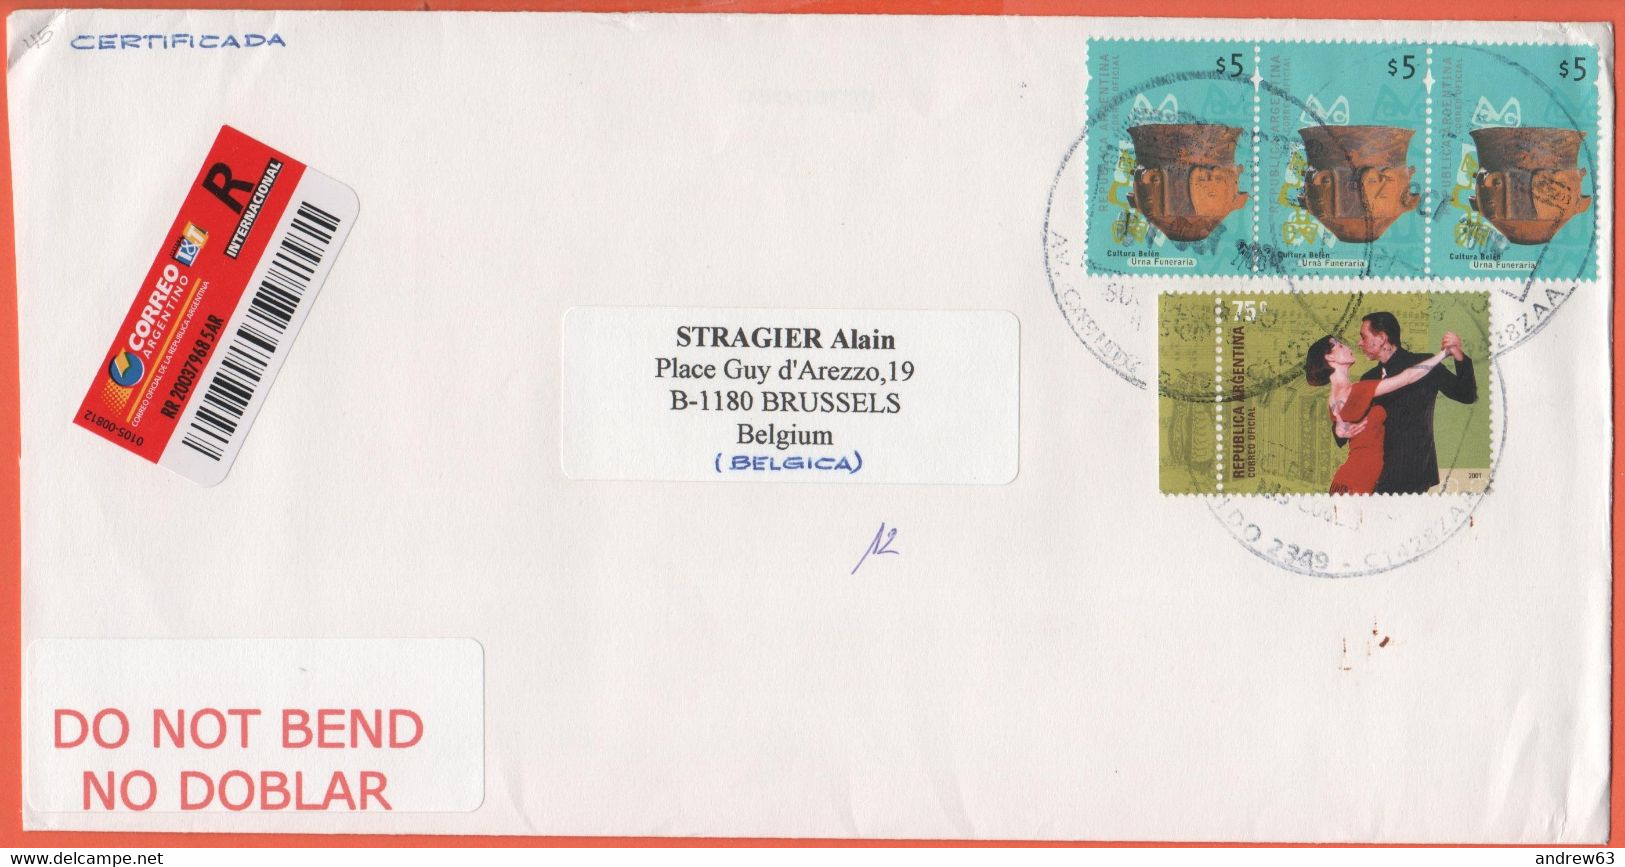 ARGENTINA - 2004 - 4 Stamps - Registered - Medium Envelope - Viaggiata Da Buenos Aires Per Bruxelles, Belgium - Covers & Documents